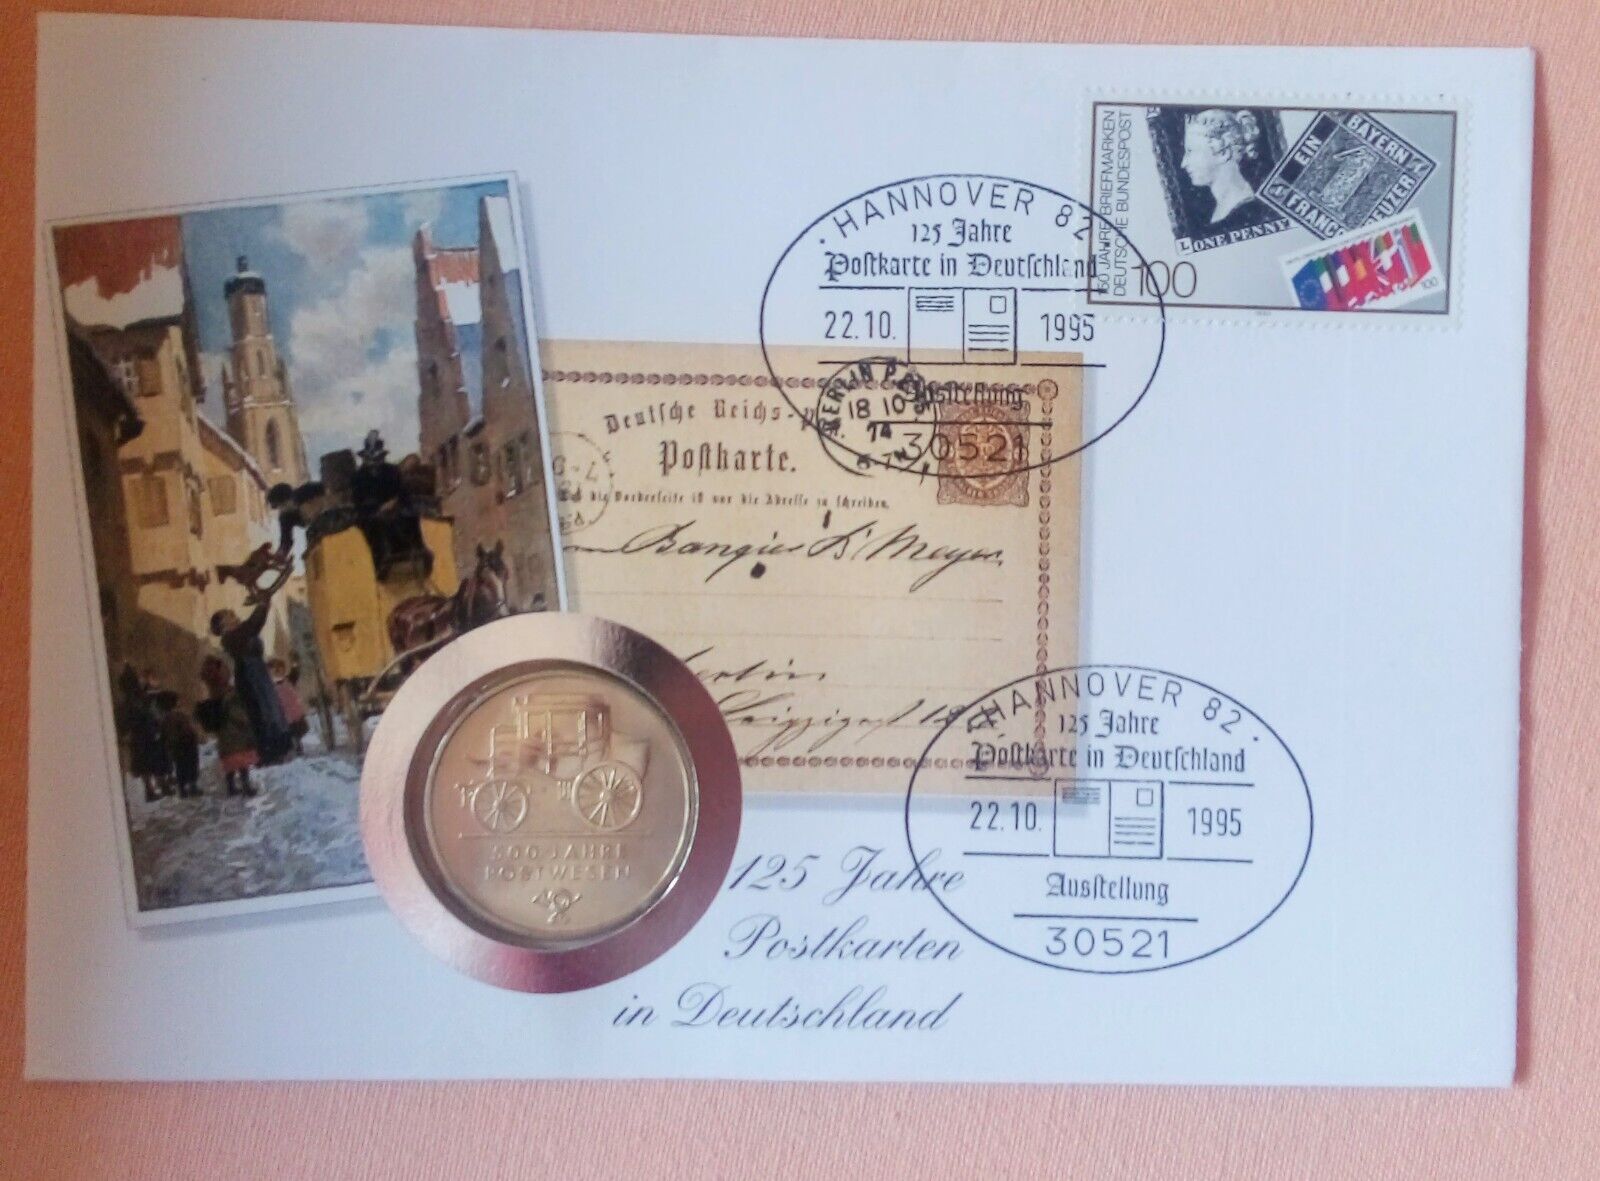  Numisbrief 125 J. Postkarten in Deutschland mit 5 Mark DDR 1990 Post sehr selten   